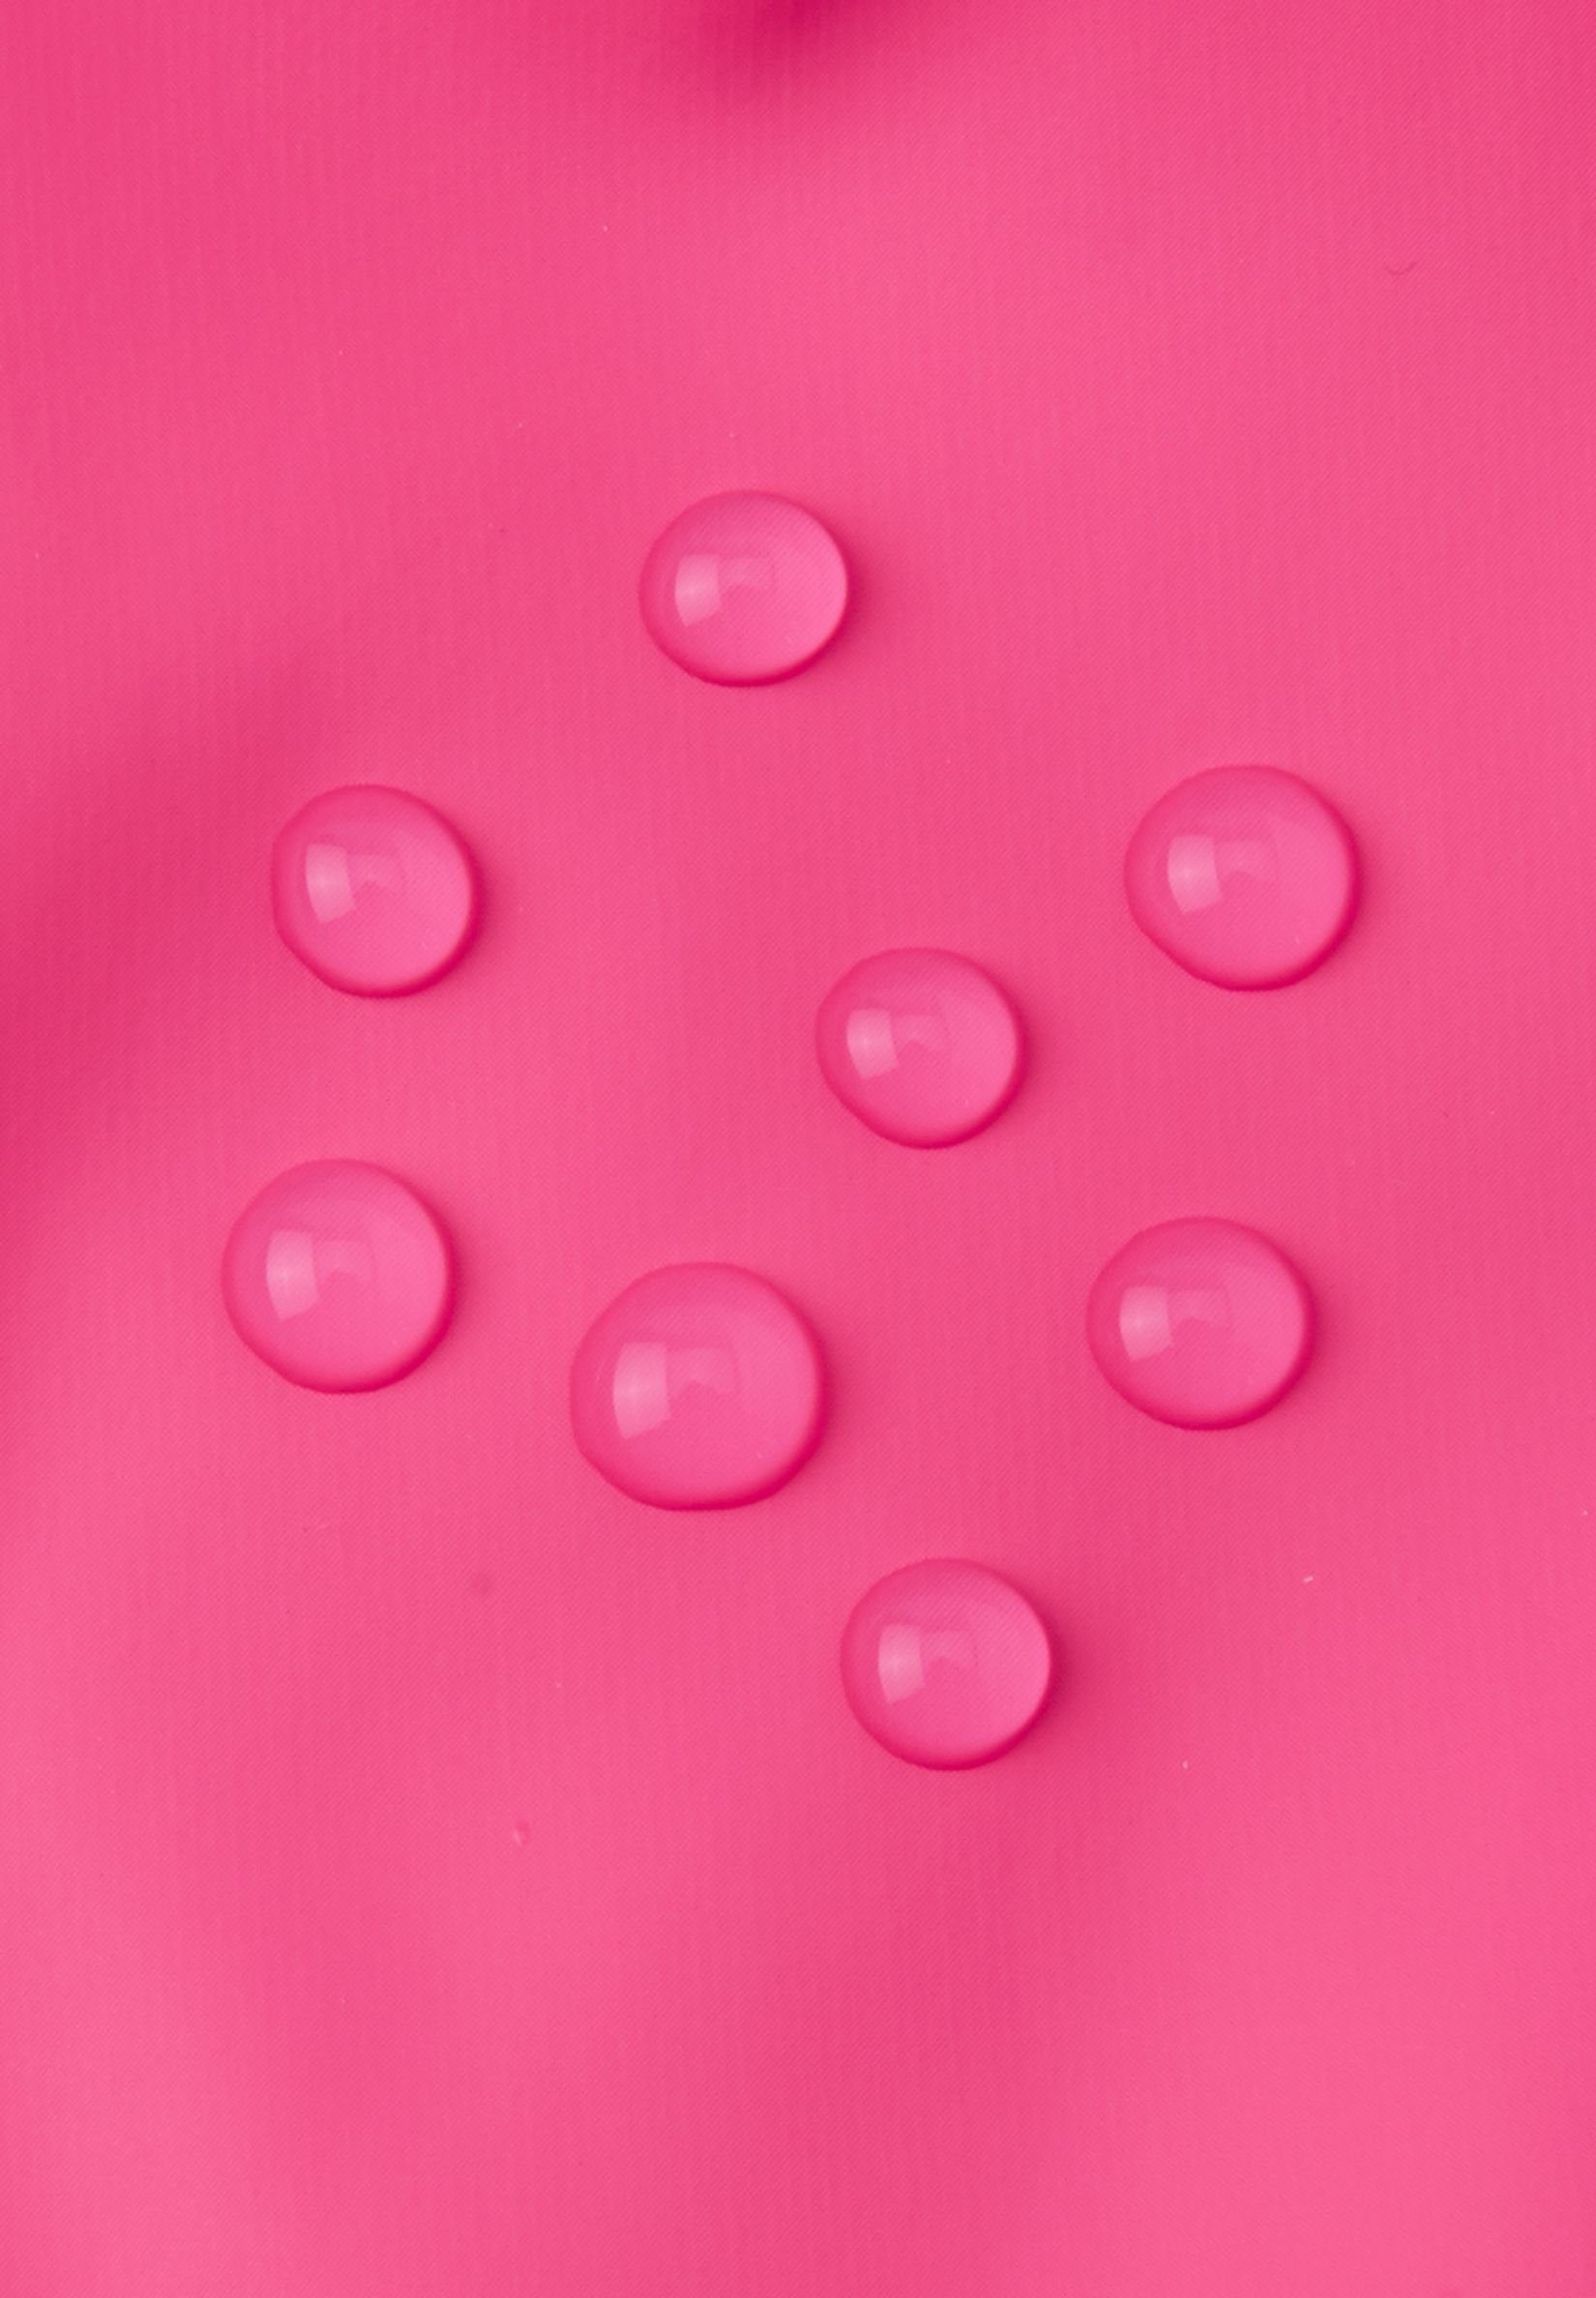 wasserdicht Nähte versiegelt, Details reima Kura alle reflektierende pink Fäustlinge Candy